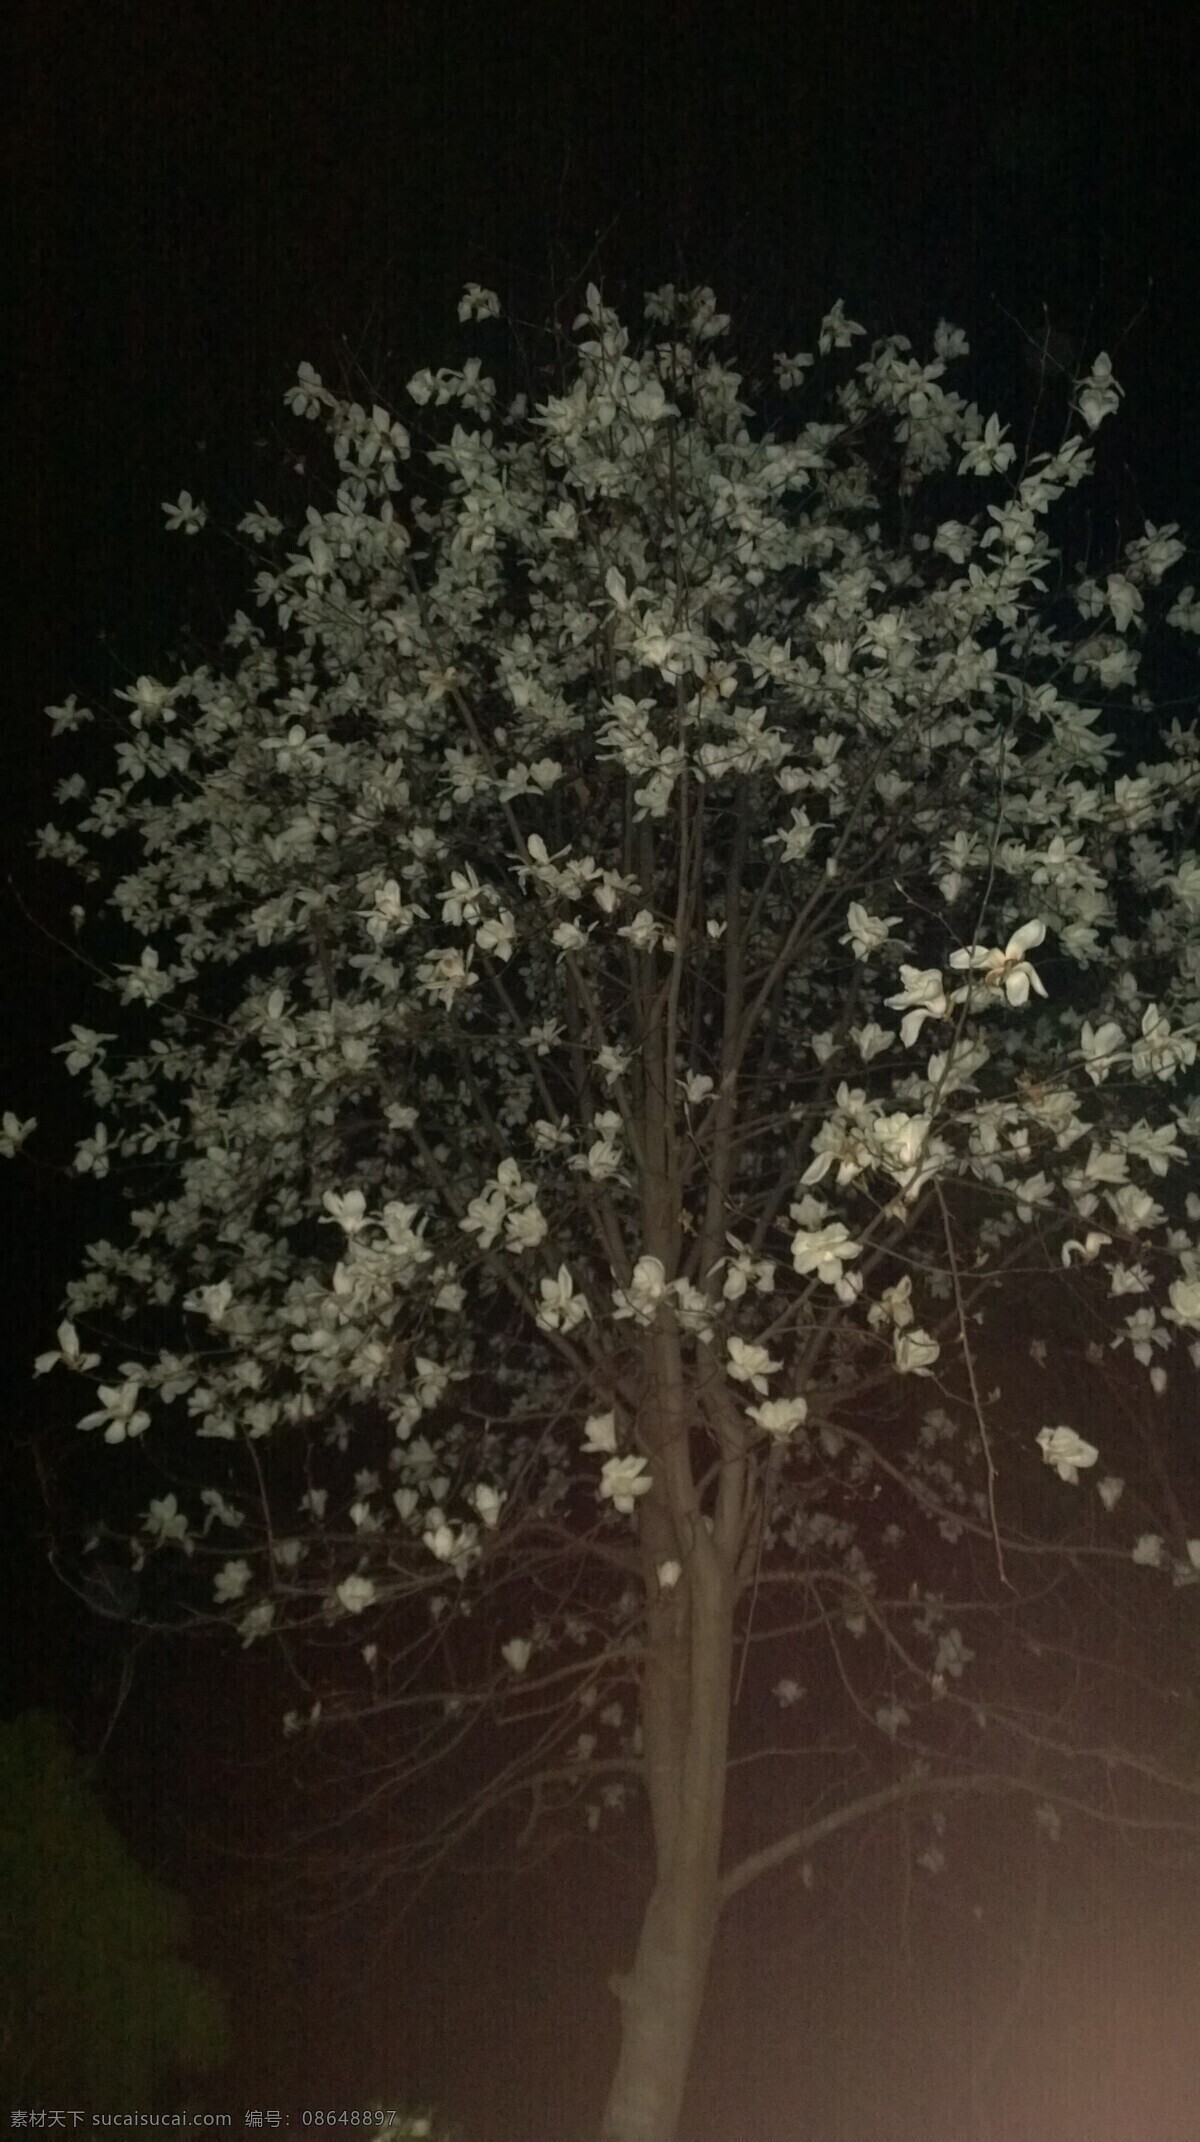 满树的玉兰花 玉兰花 满树 白花 满枝 广玉兰 夜拍 玉兰 植物 生物世界 树木树叶